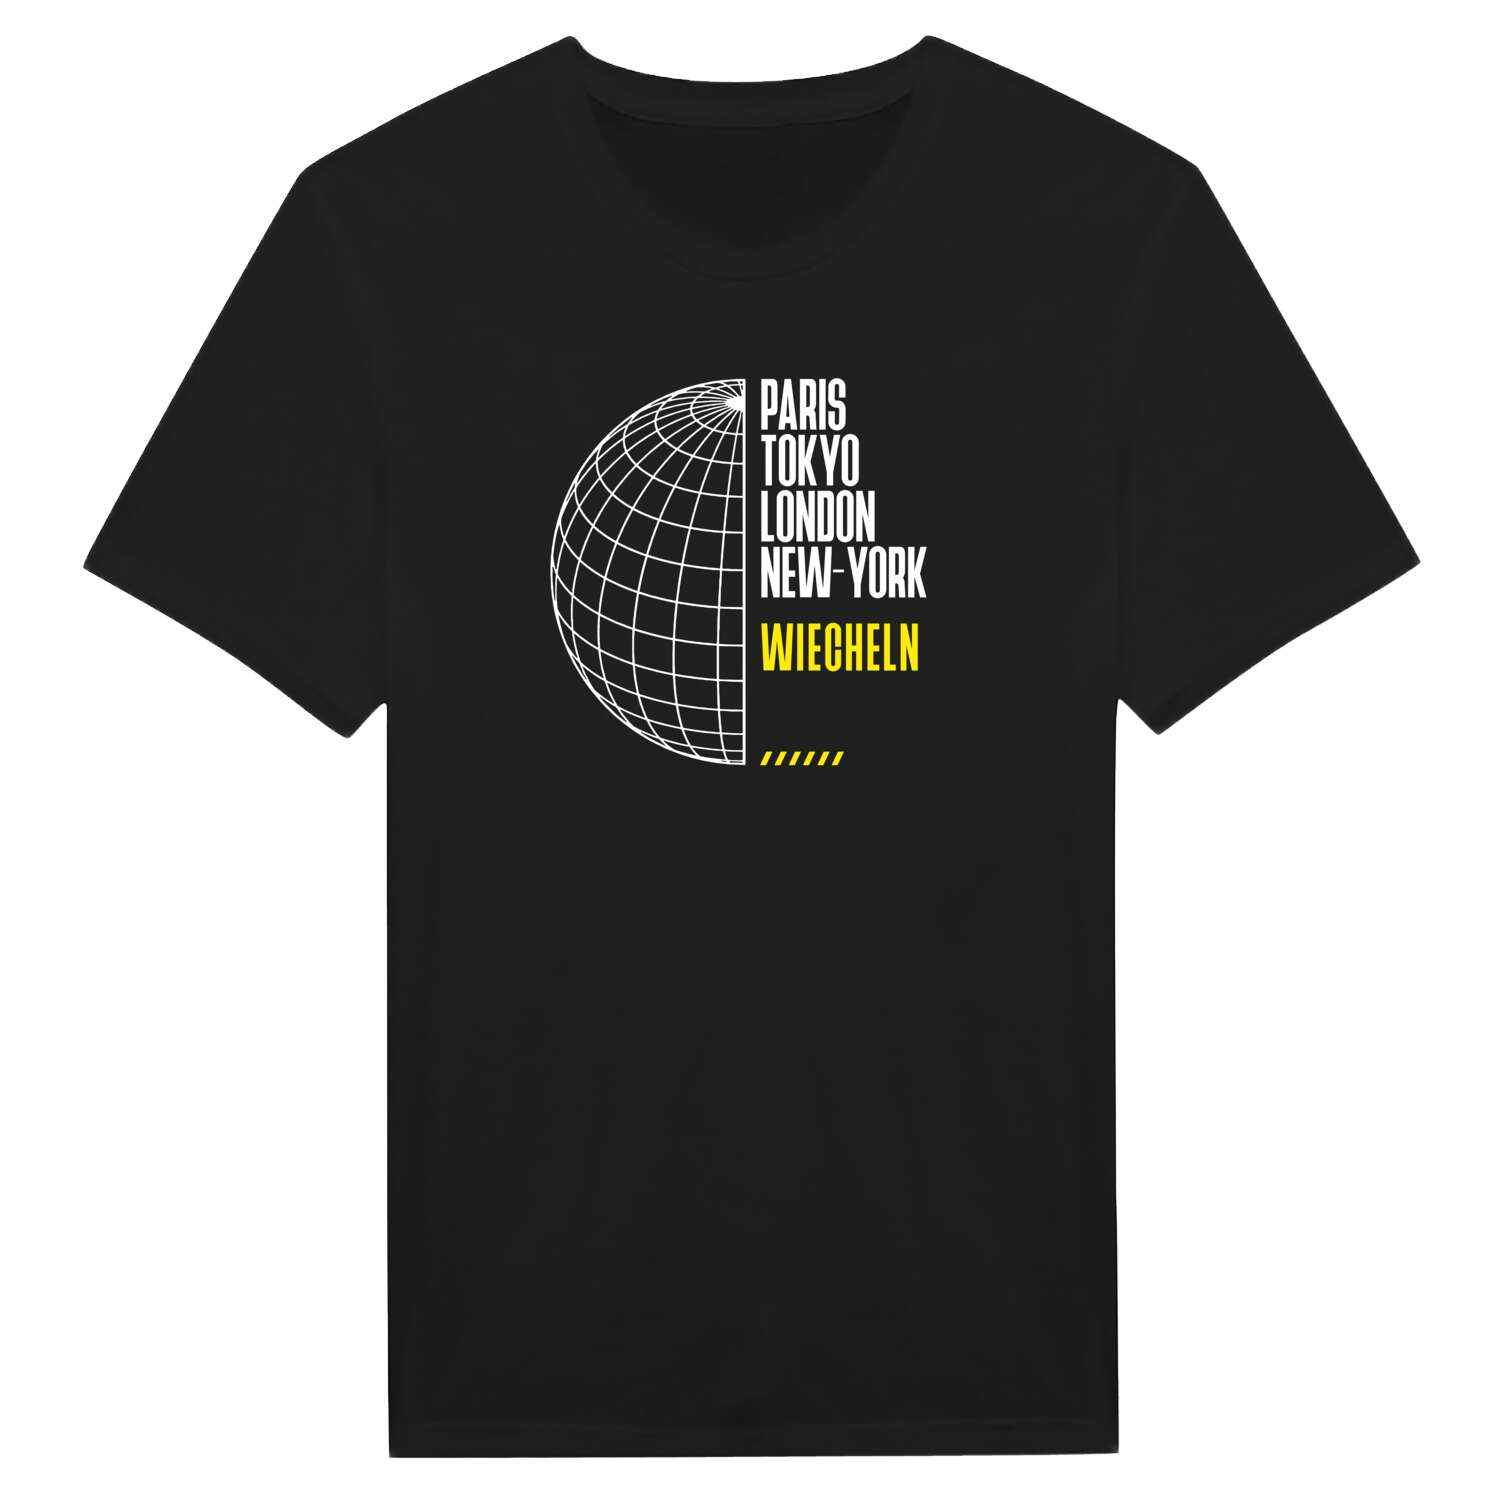 Wiecheln T-Shirt »Paris Tokyo London«